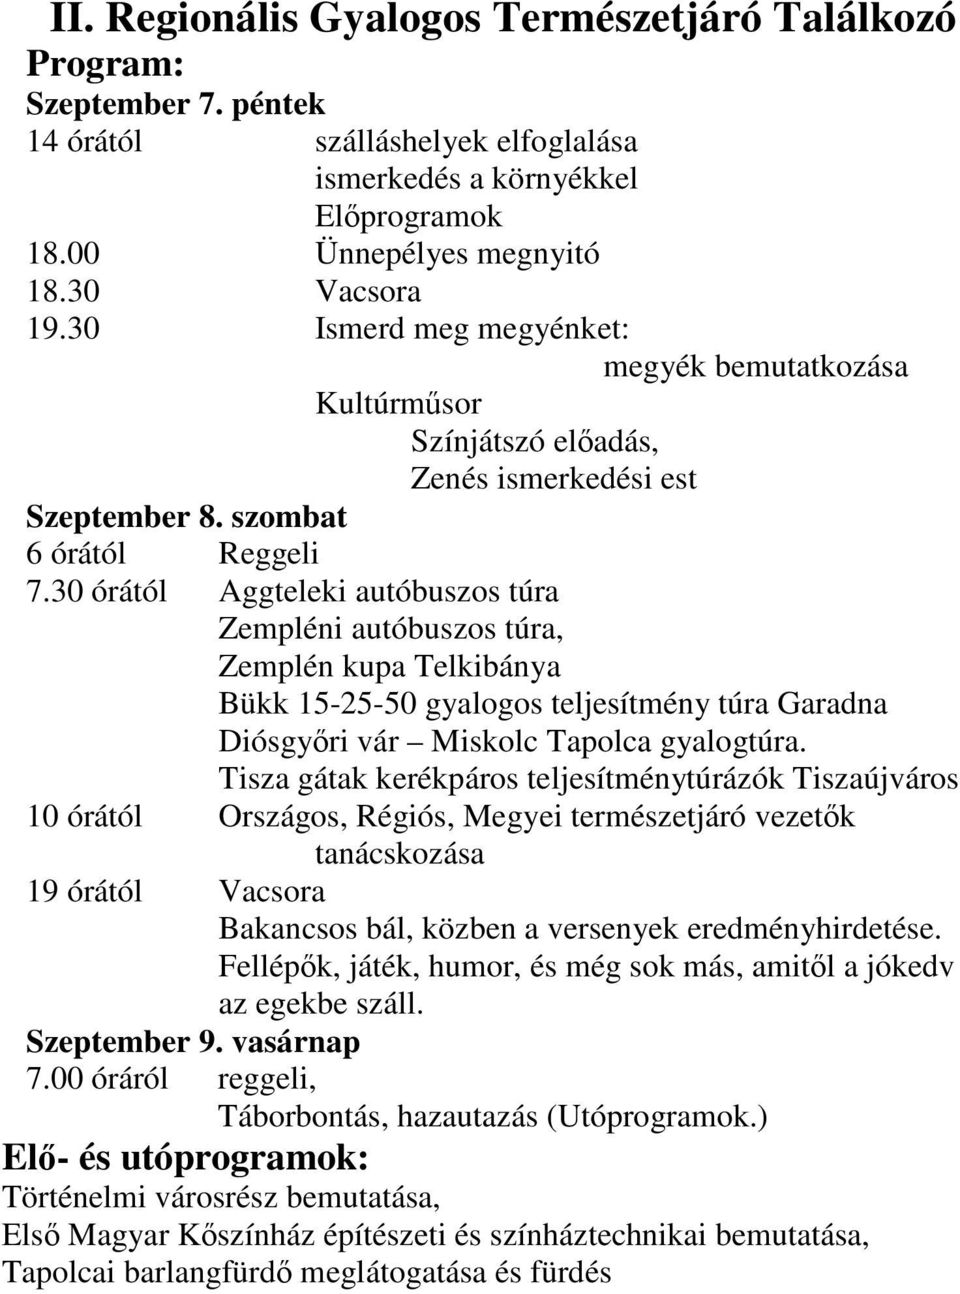 30 órától Aggteleki autóbuszos túra Zempléni autóbuszos túra, Zemplén kupa Telkibánya Bükk 15-25-50 gyalogos teljesítmény túra Garadna Diósgyőri vár Miskolc Tapolca gyalogtúra.